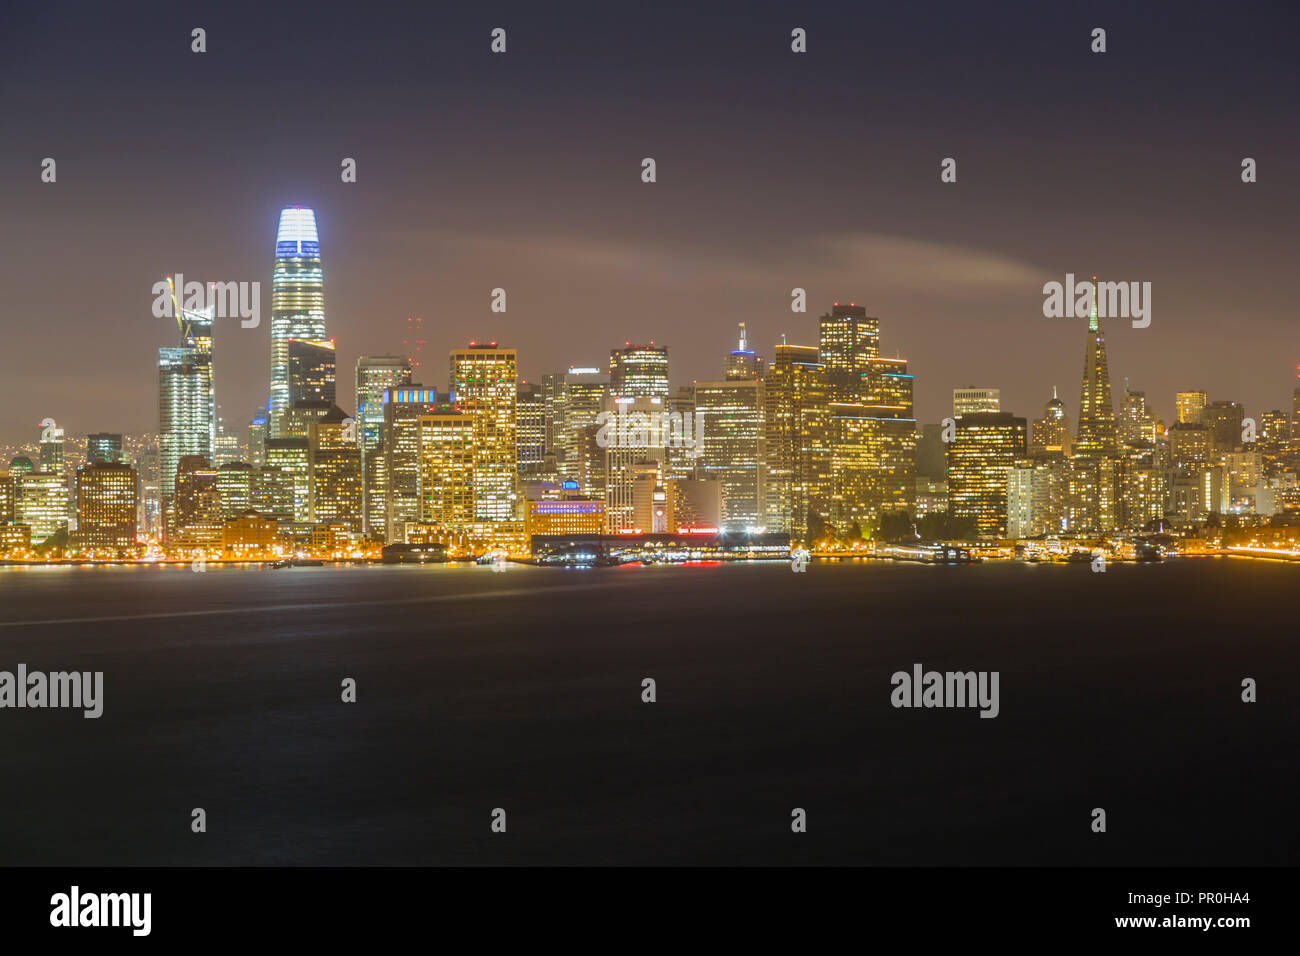 Vue sur San Francisco skyline de l'île au trésor de nuit, San Francisco, Californie, États-Unis d'Amérique, Amérique du Nord Banque D'Images